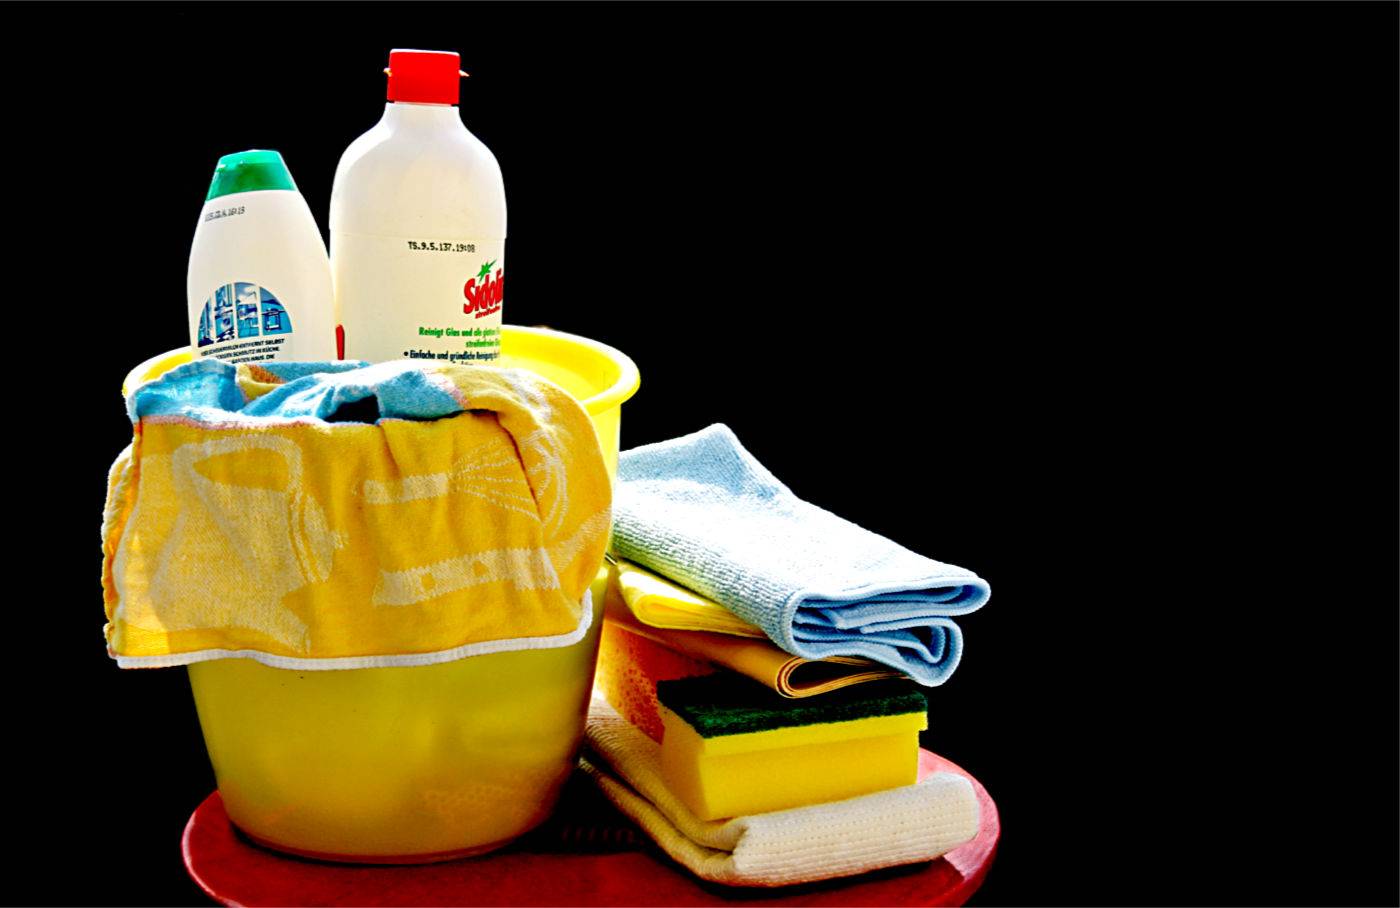 Избавьтесь от лишнего: чек-лист из 10 предметов, которых хватит для уборки дома